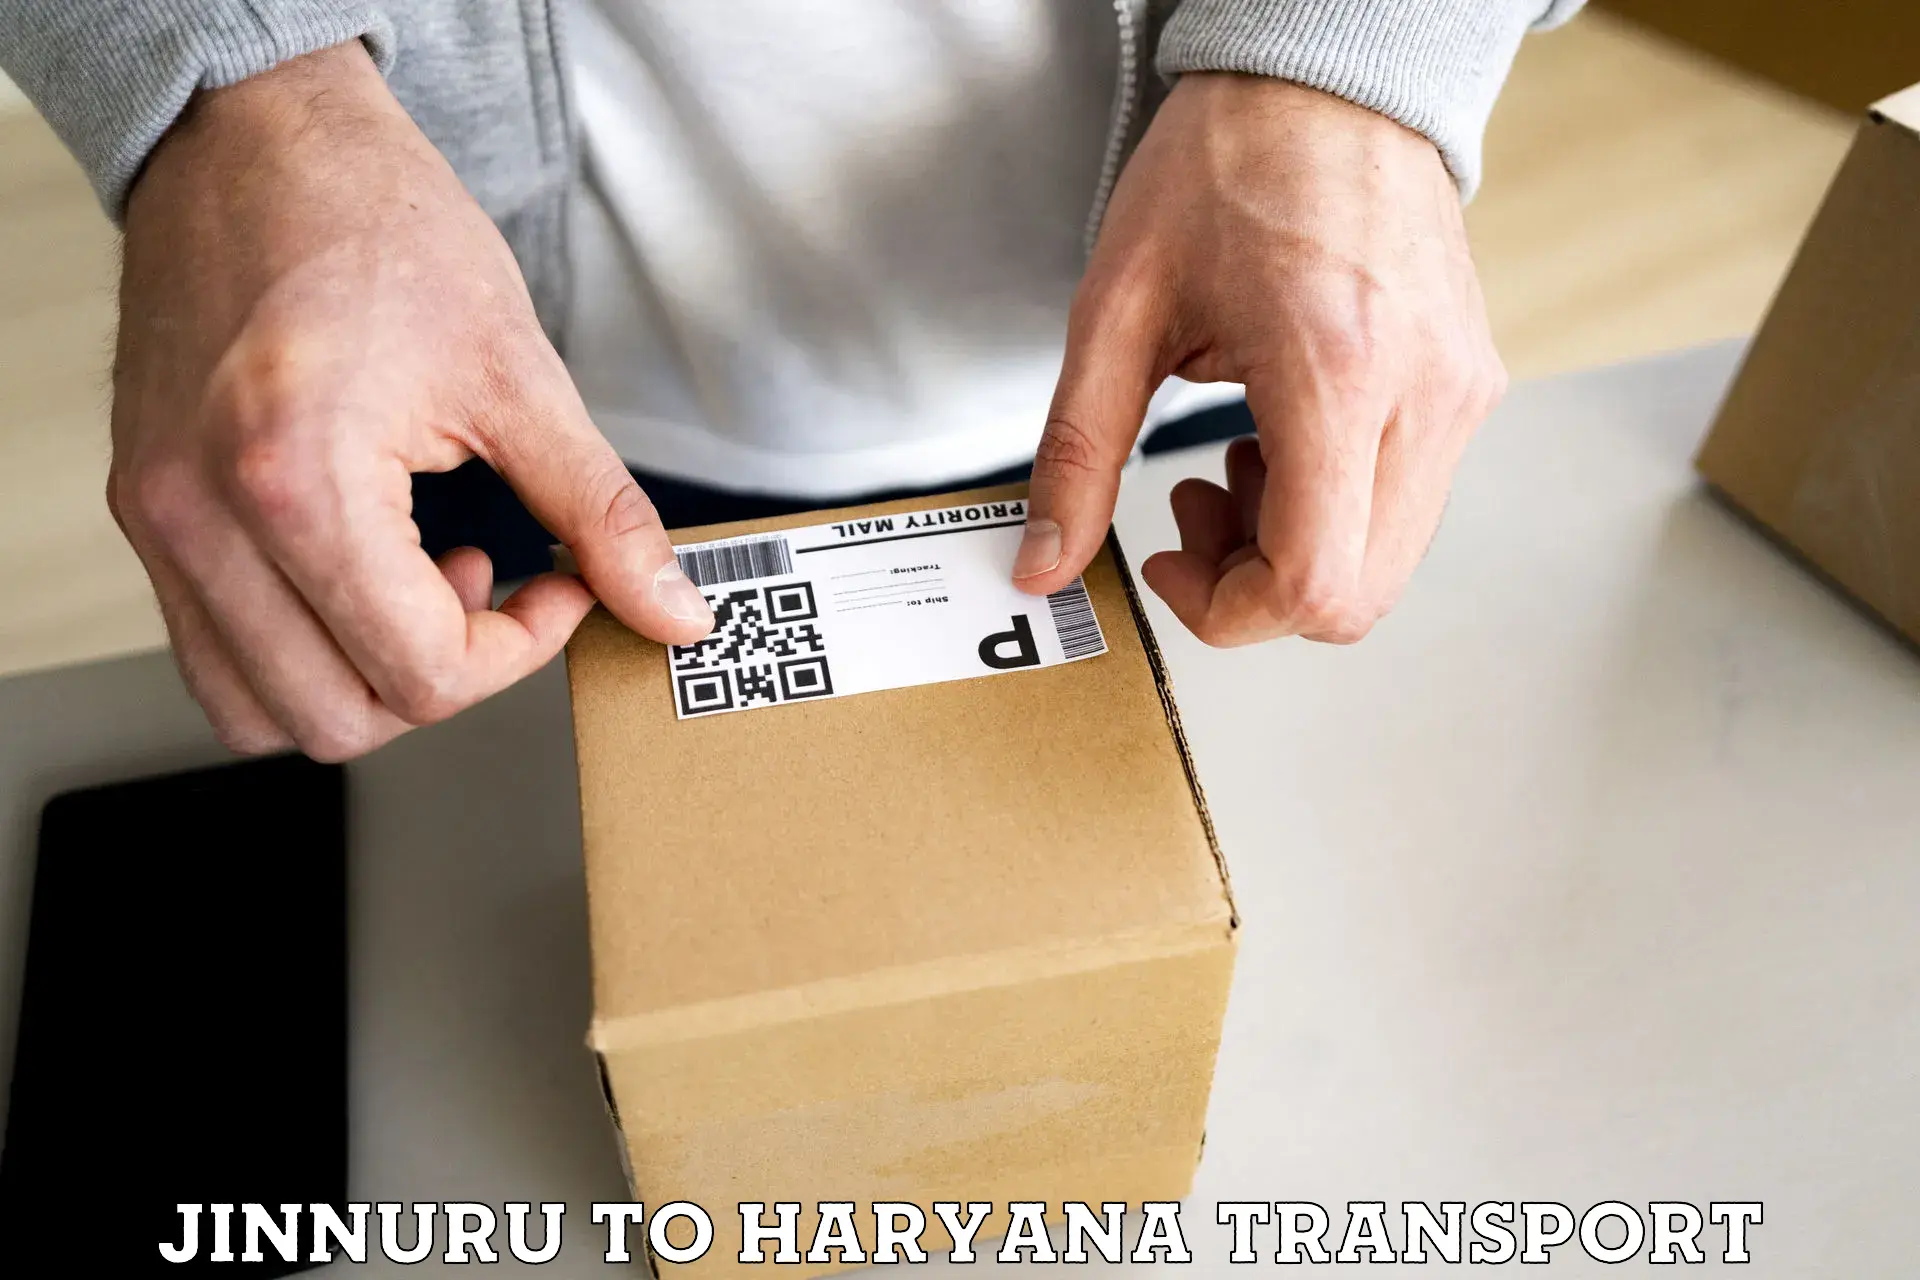 Scooty parcel Jinnuru to Narwana